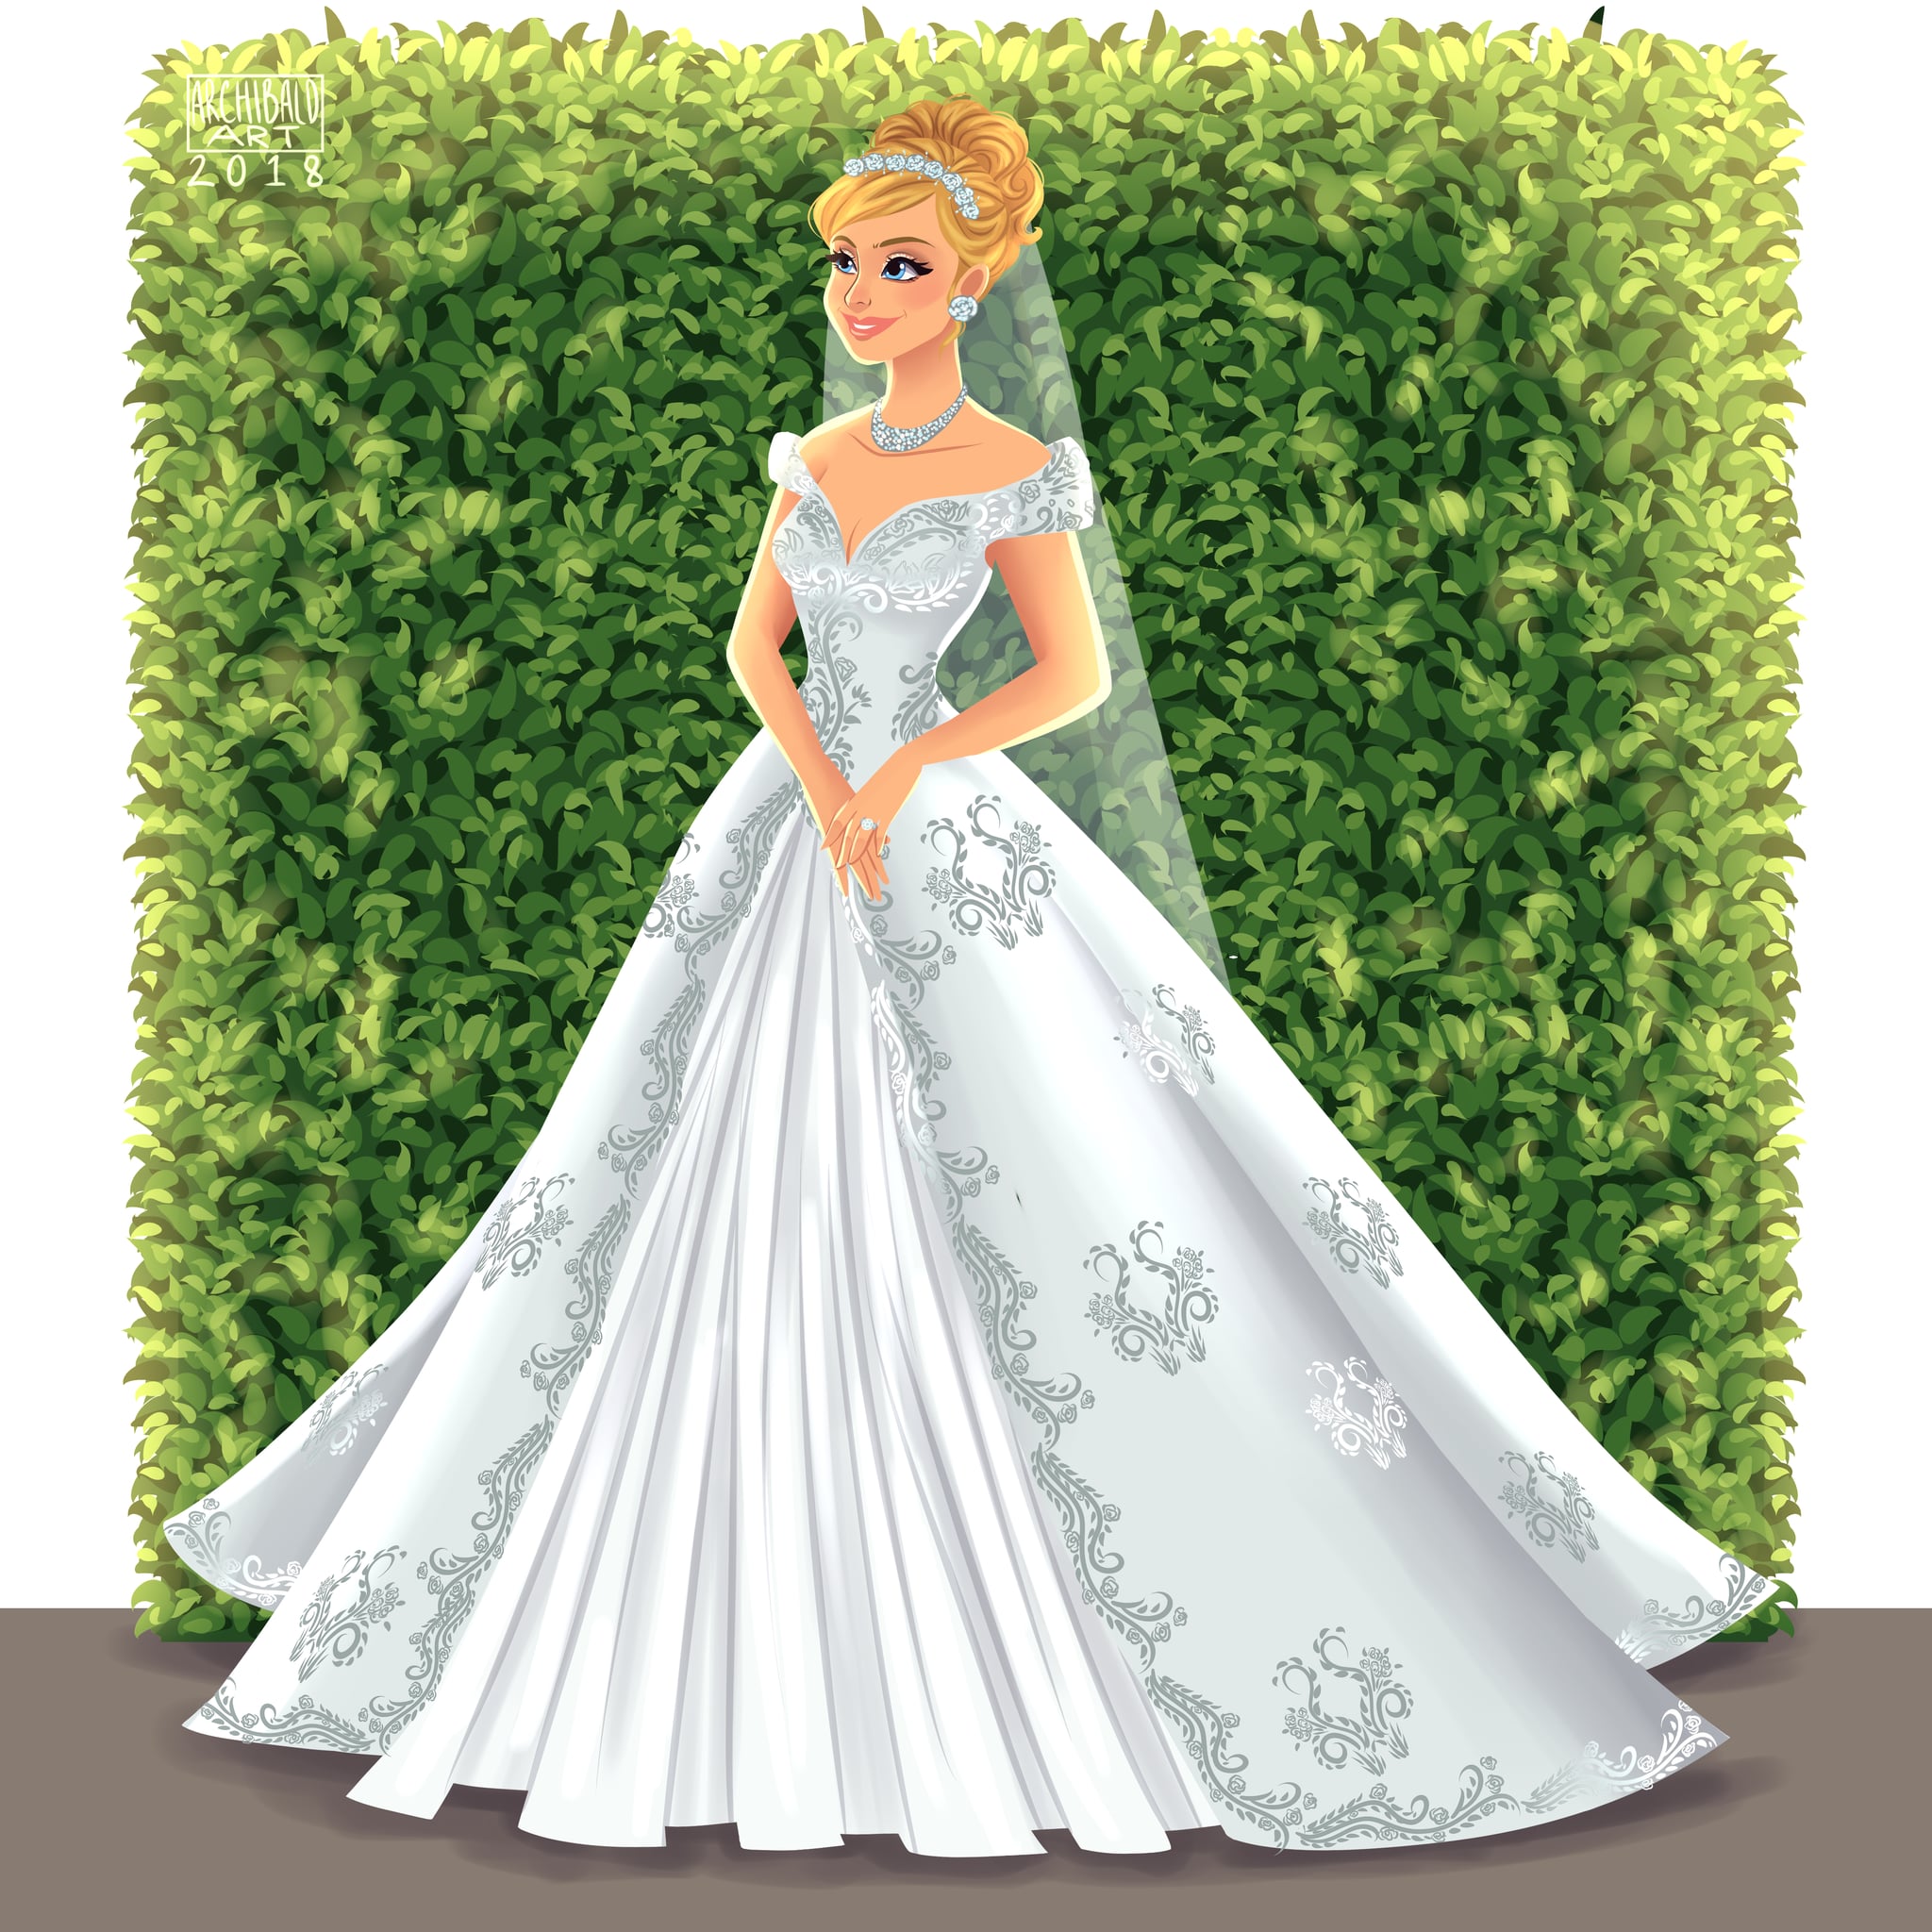 cinderella wedding gown